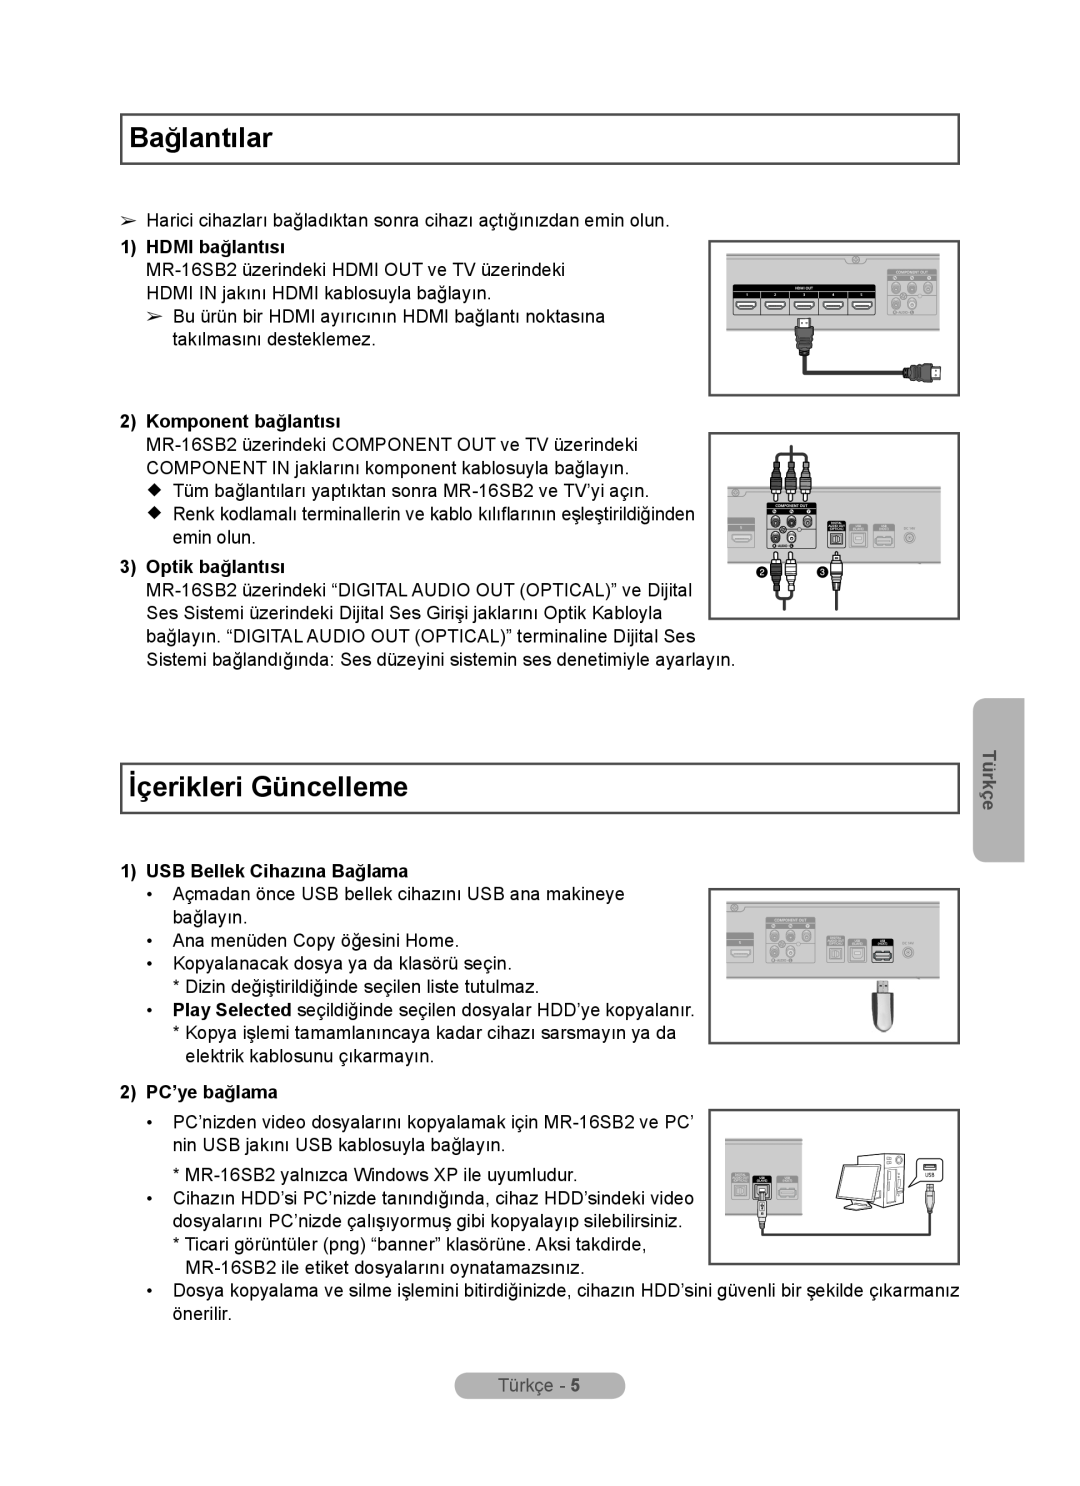 Samsung MR-16SB2 Bağlantılar, İçerikleri Güncelleme, HDMI bağlantısı, Komponent bağlantısı, USB Bellek Cihazına Bağlama 